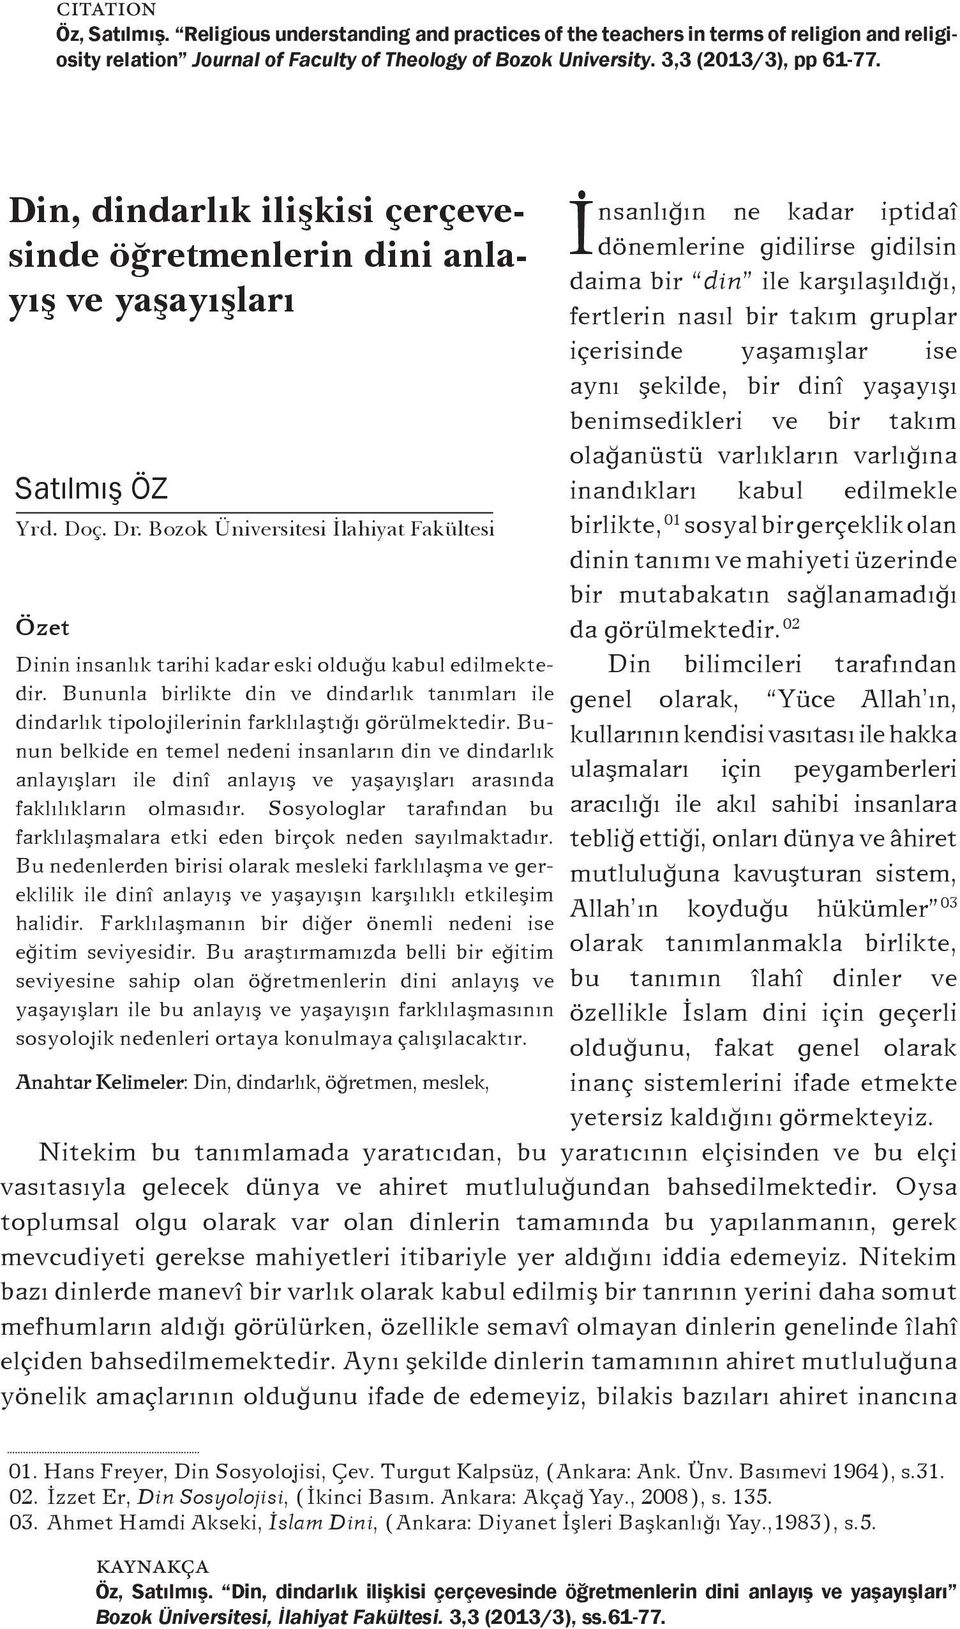 görülmektedir. 02 Dinin insanlýk tarihi kadar eski olduðu kabul edilmektedir.